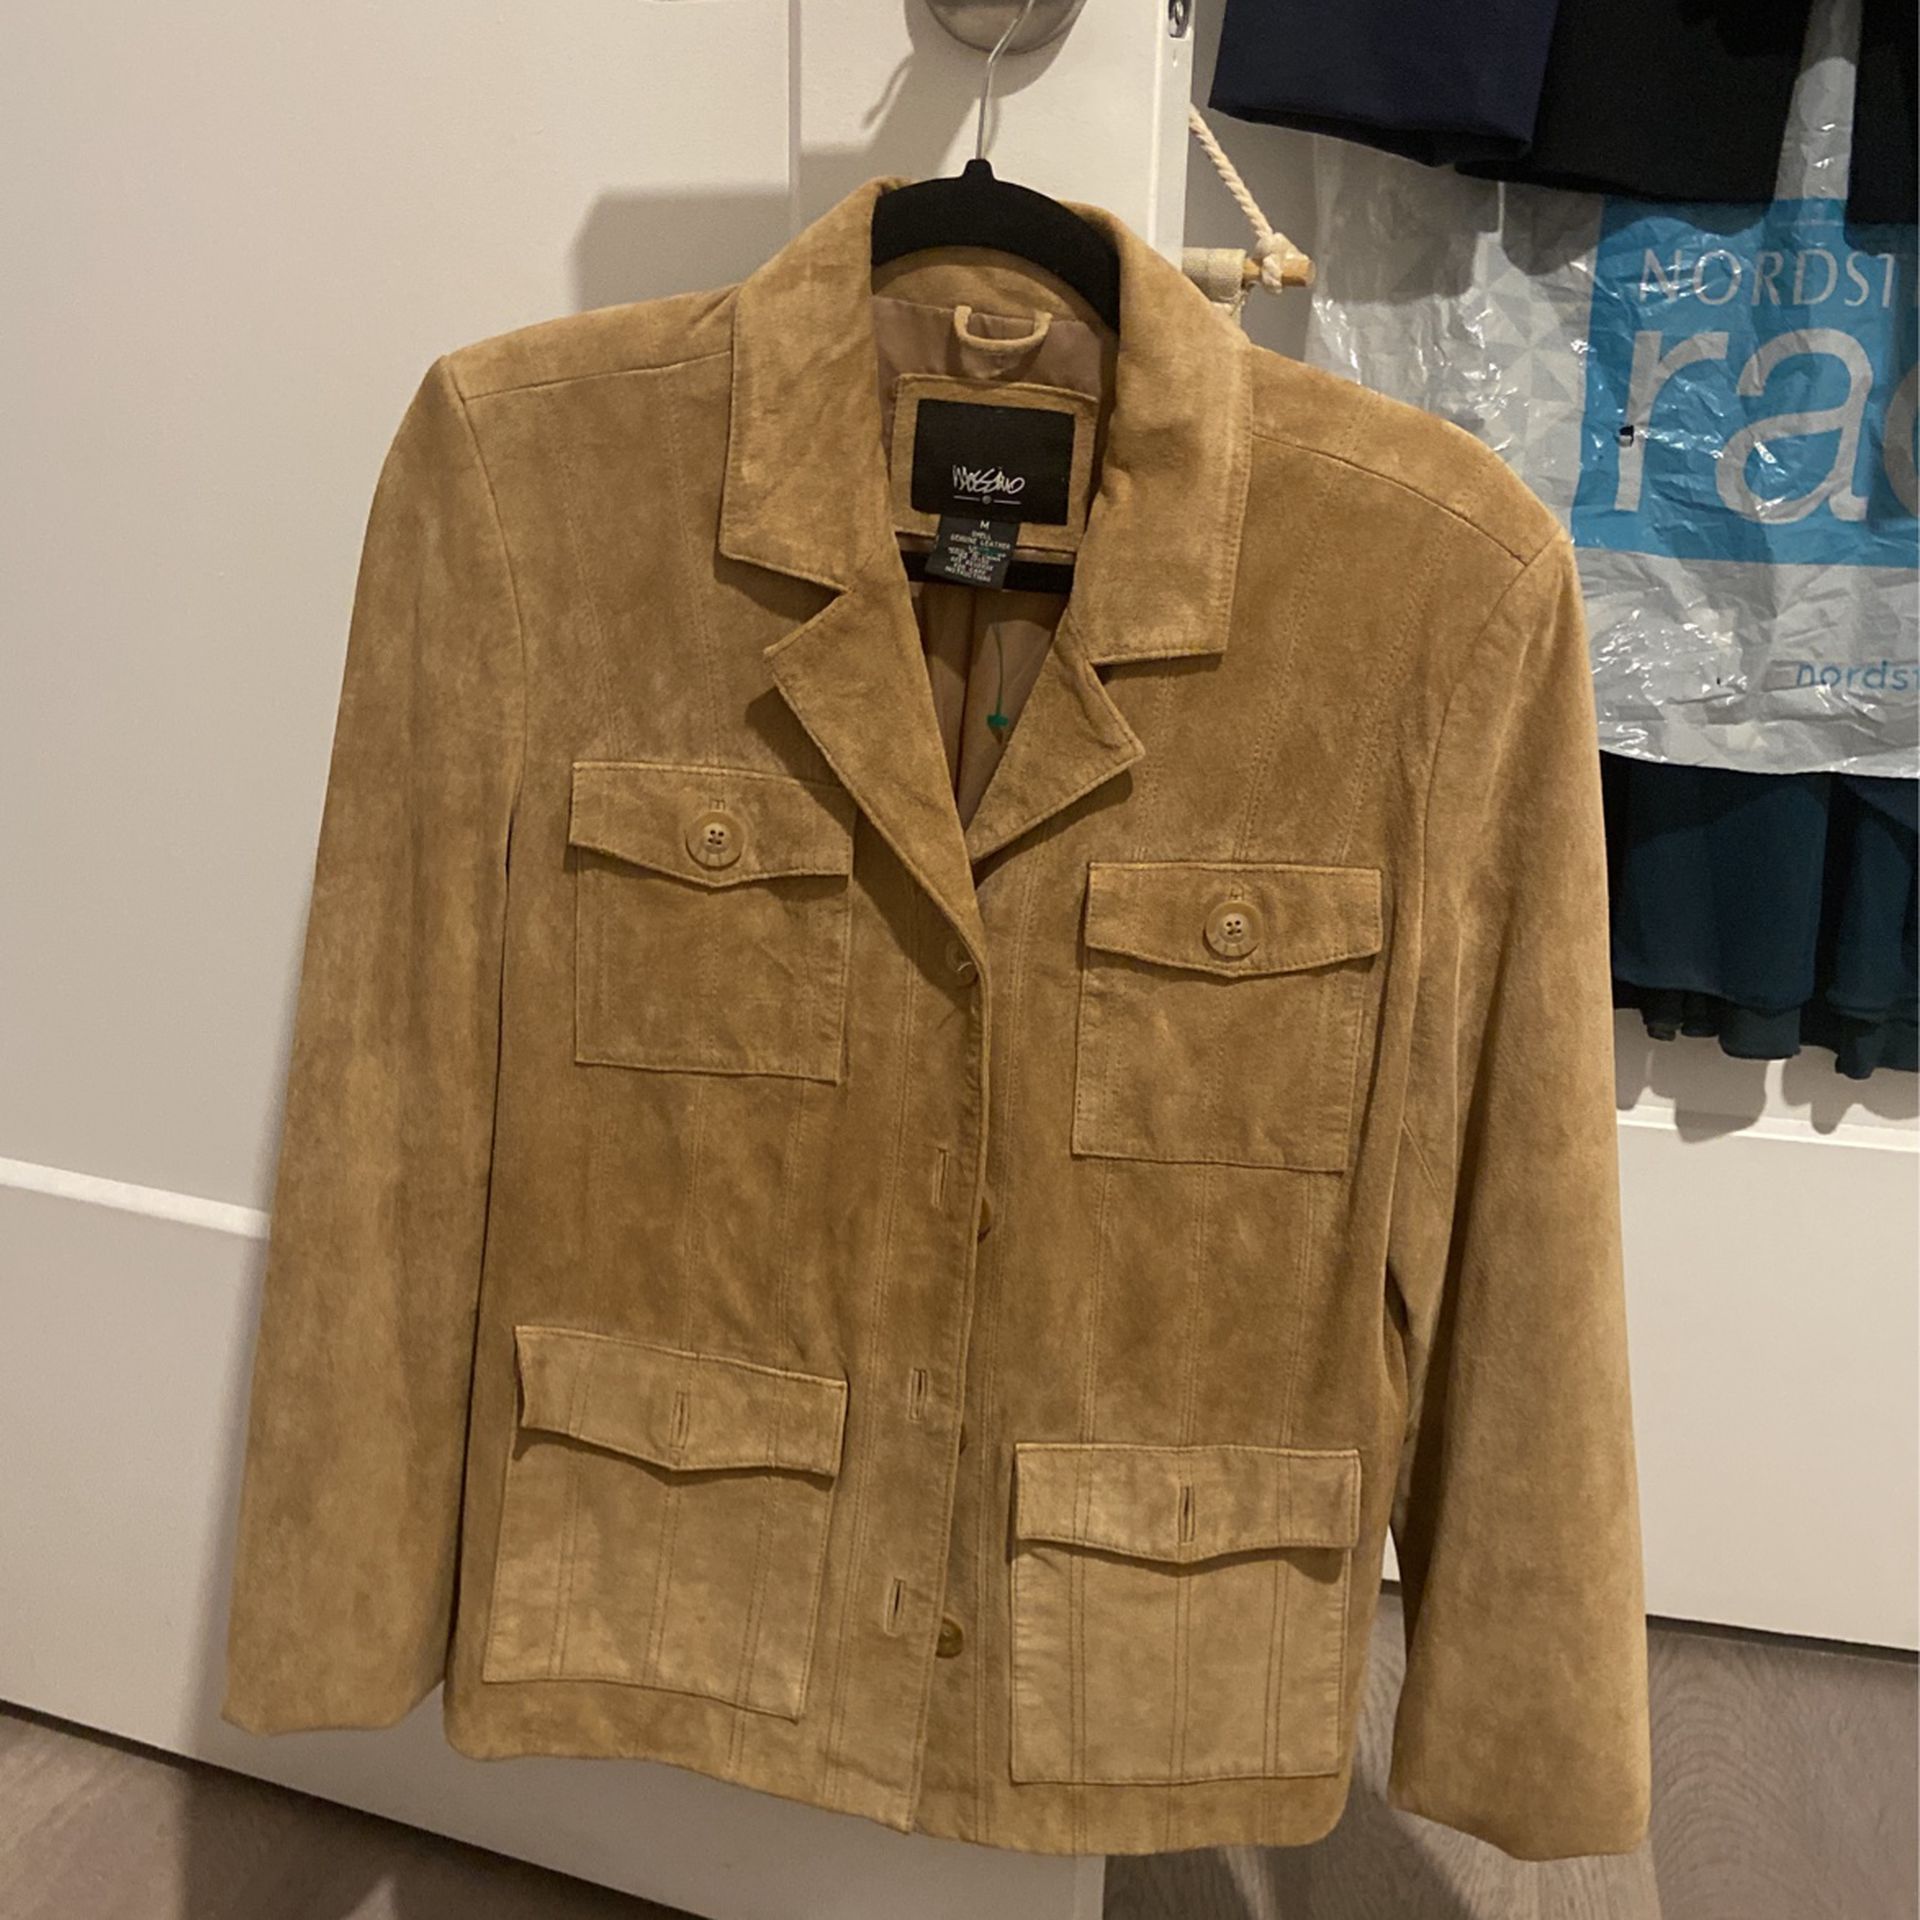 Mossimo Leather Jacket Size Medium